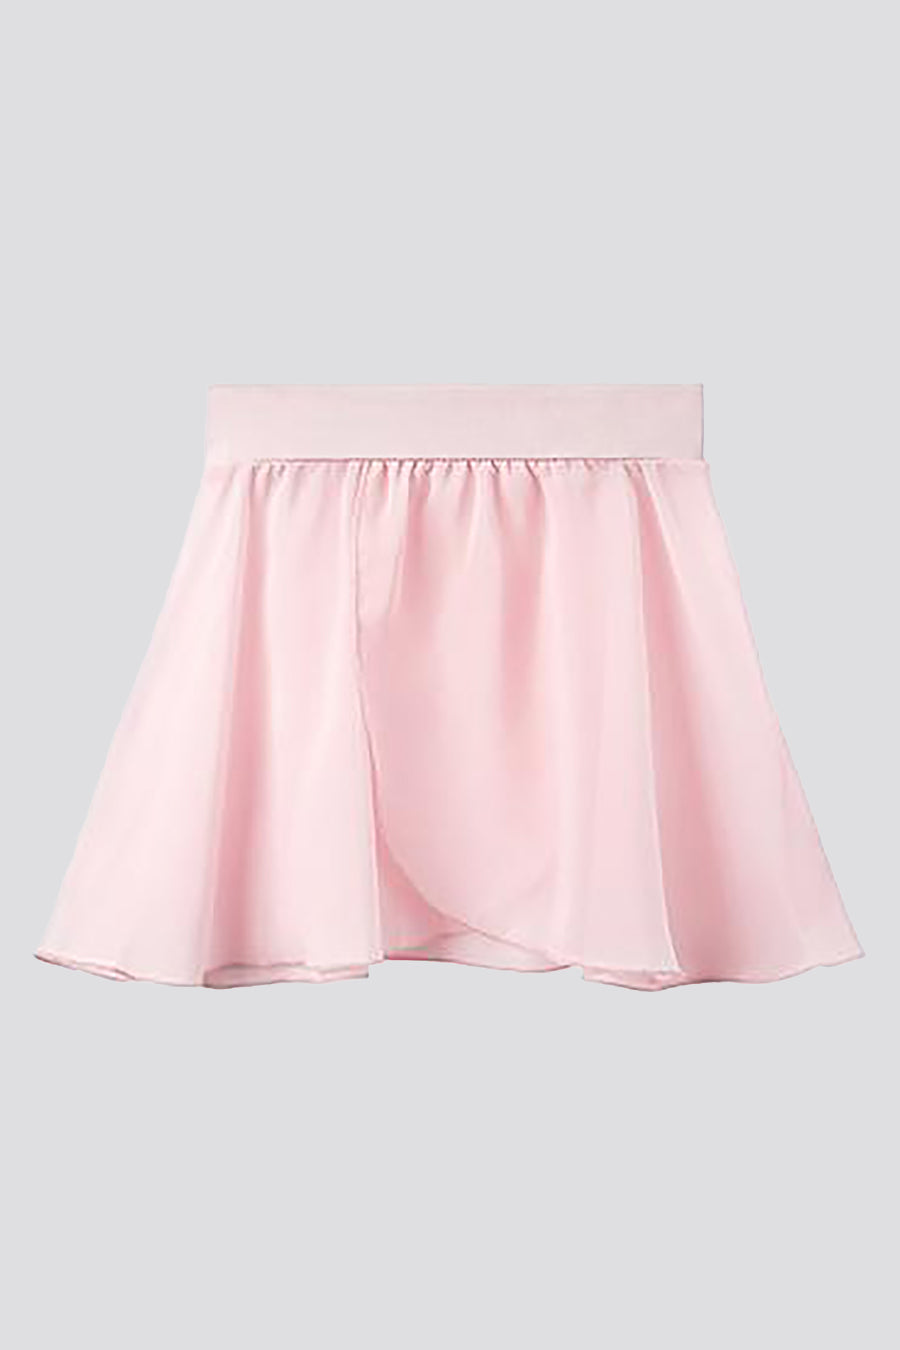 Stelle World Girl's Chiffon Pull-On Wrap Skirt